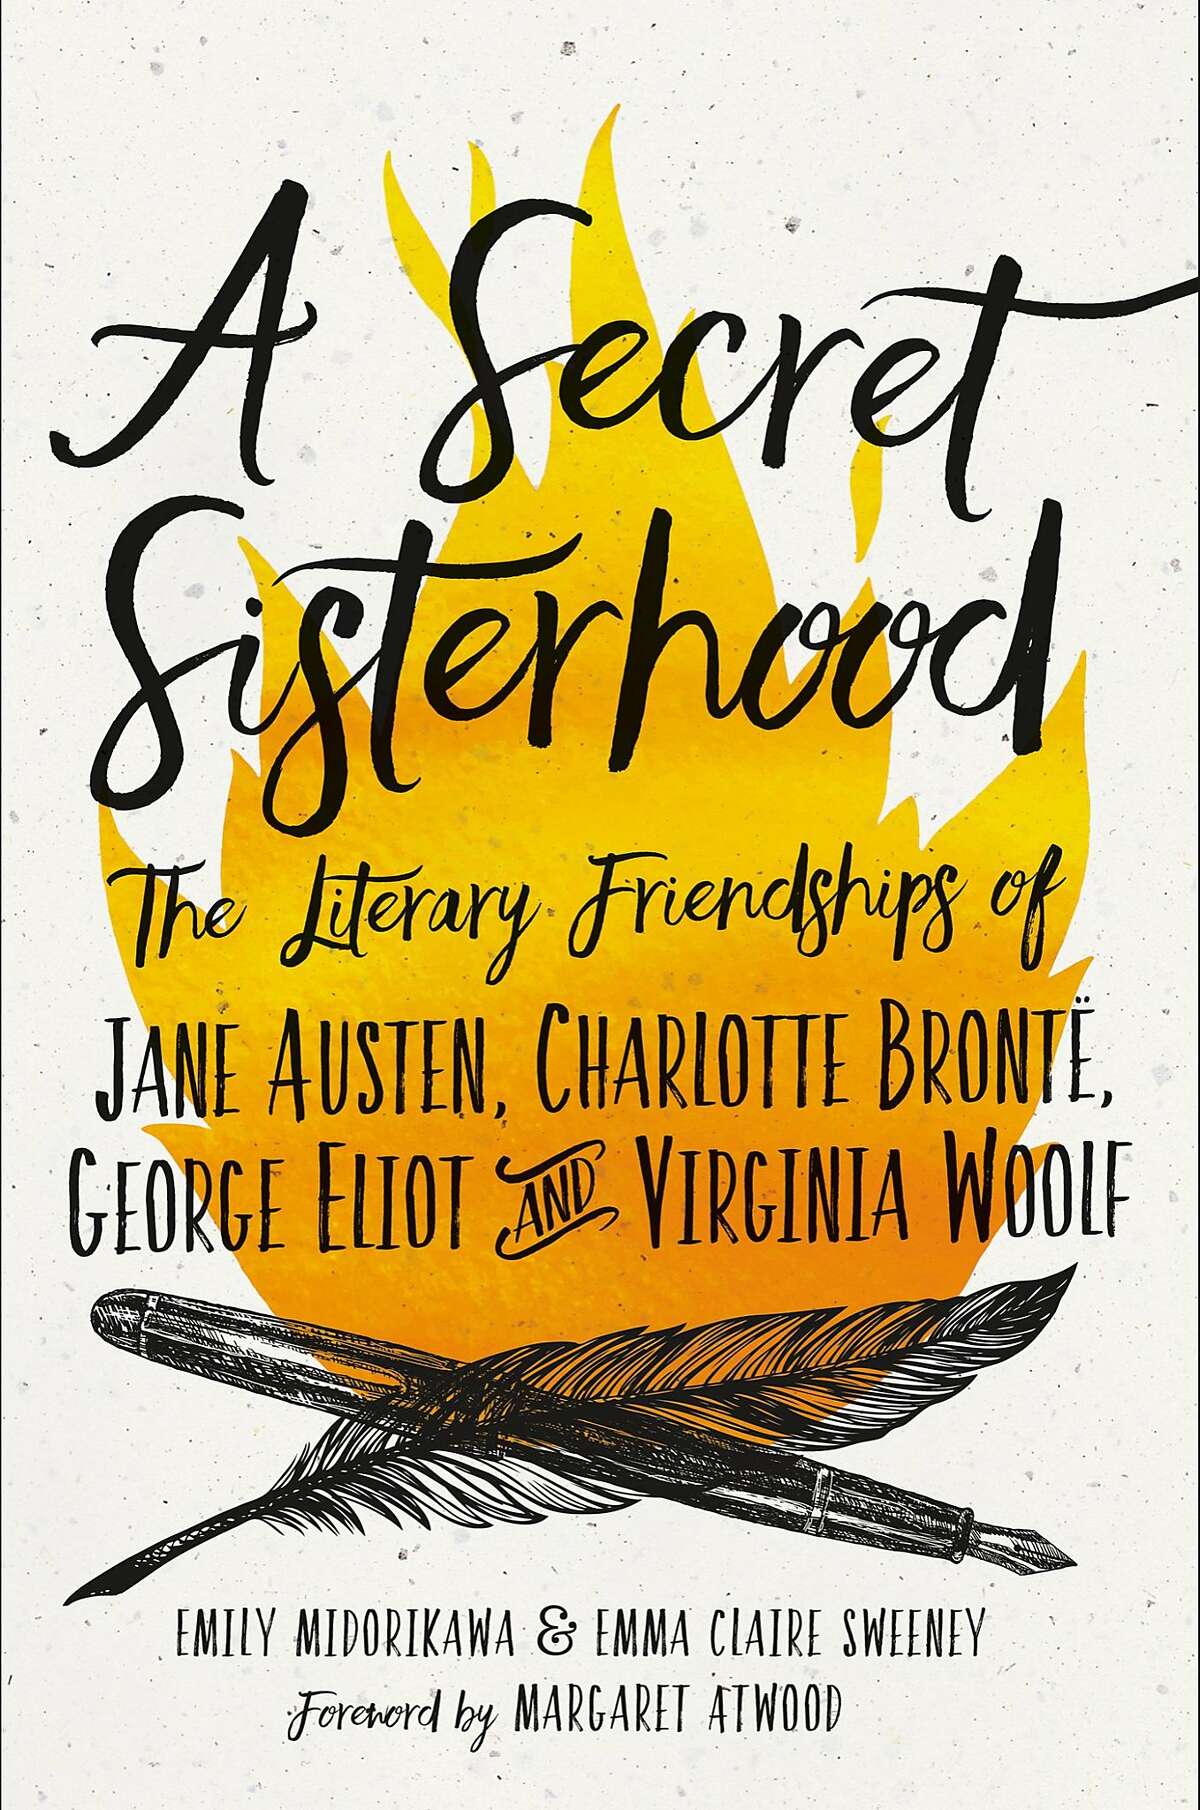 "A Secret Sisterhood"